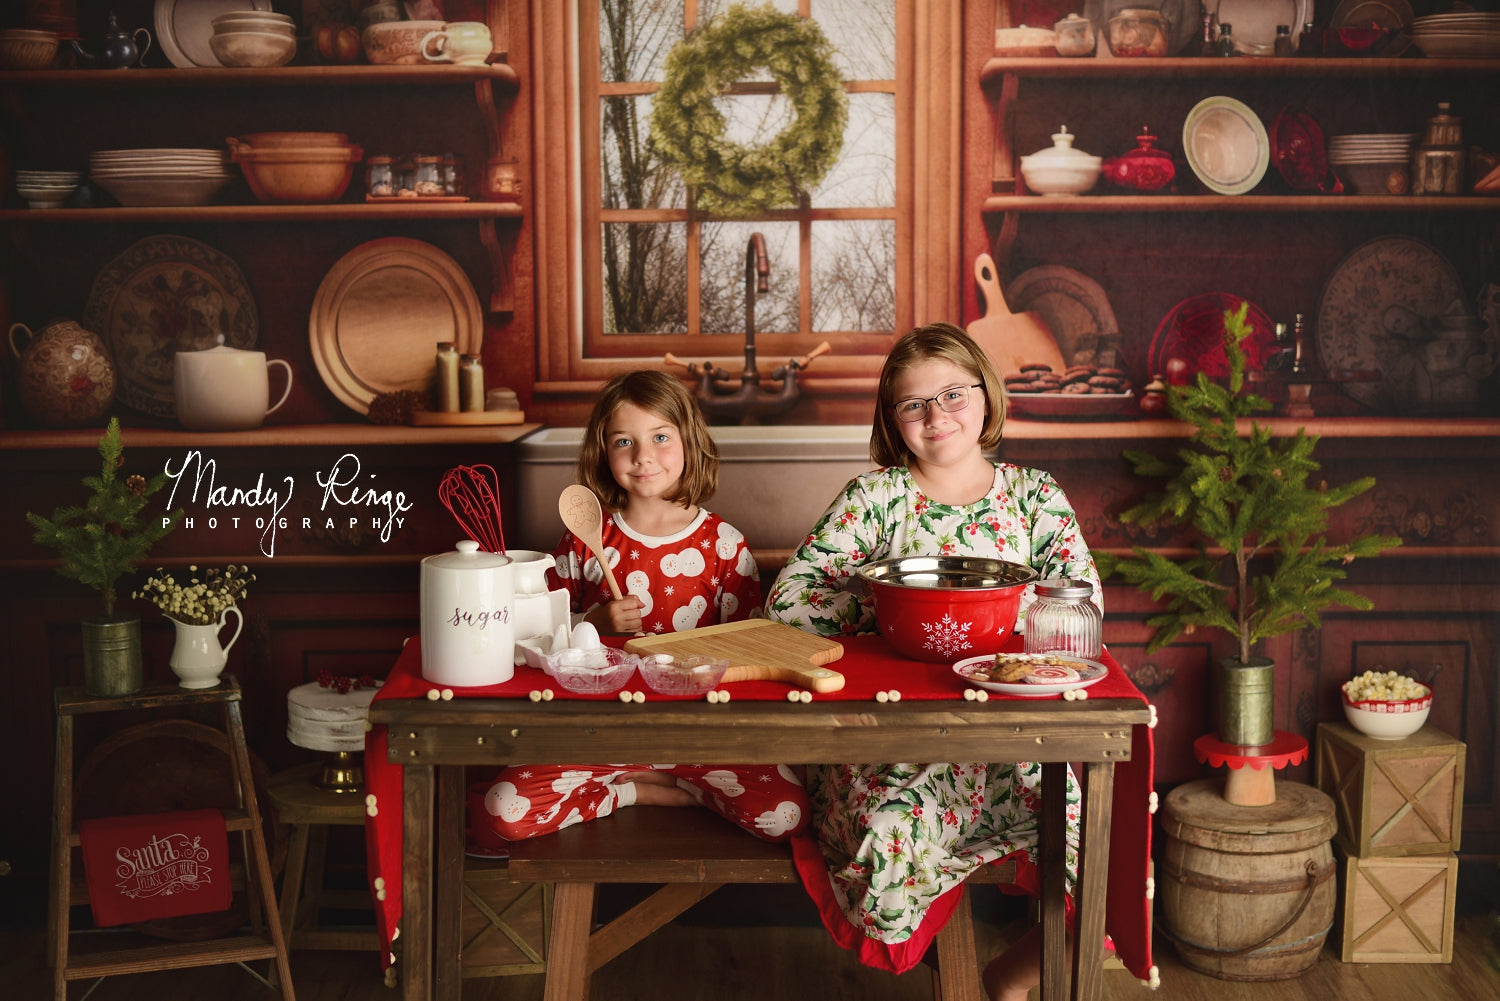 Kate Gemütliche Weihnachten Küche Hintergrund von Mandy Ringe Fotograf